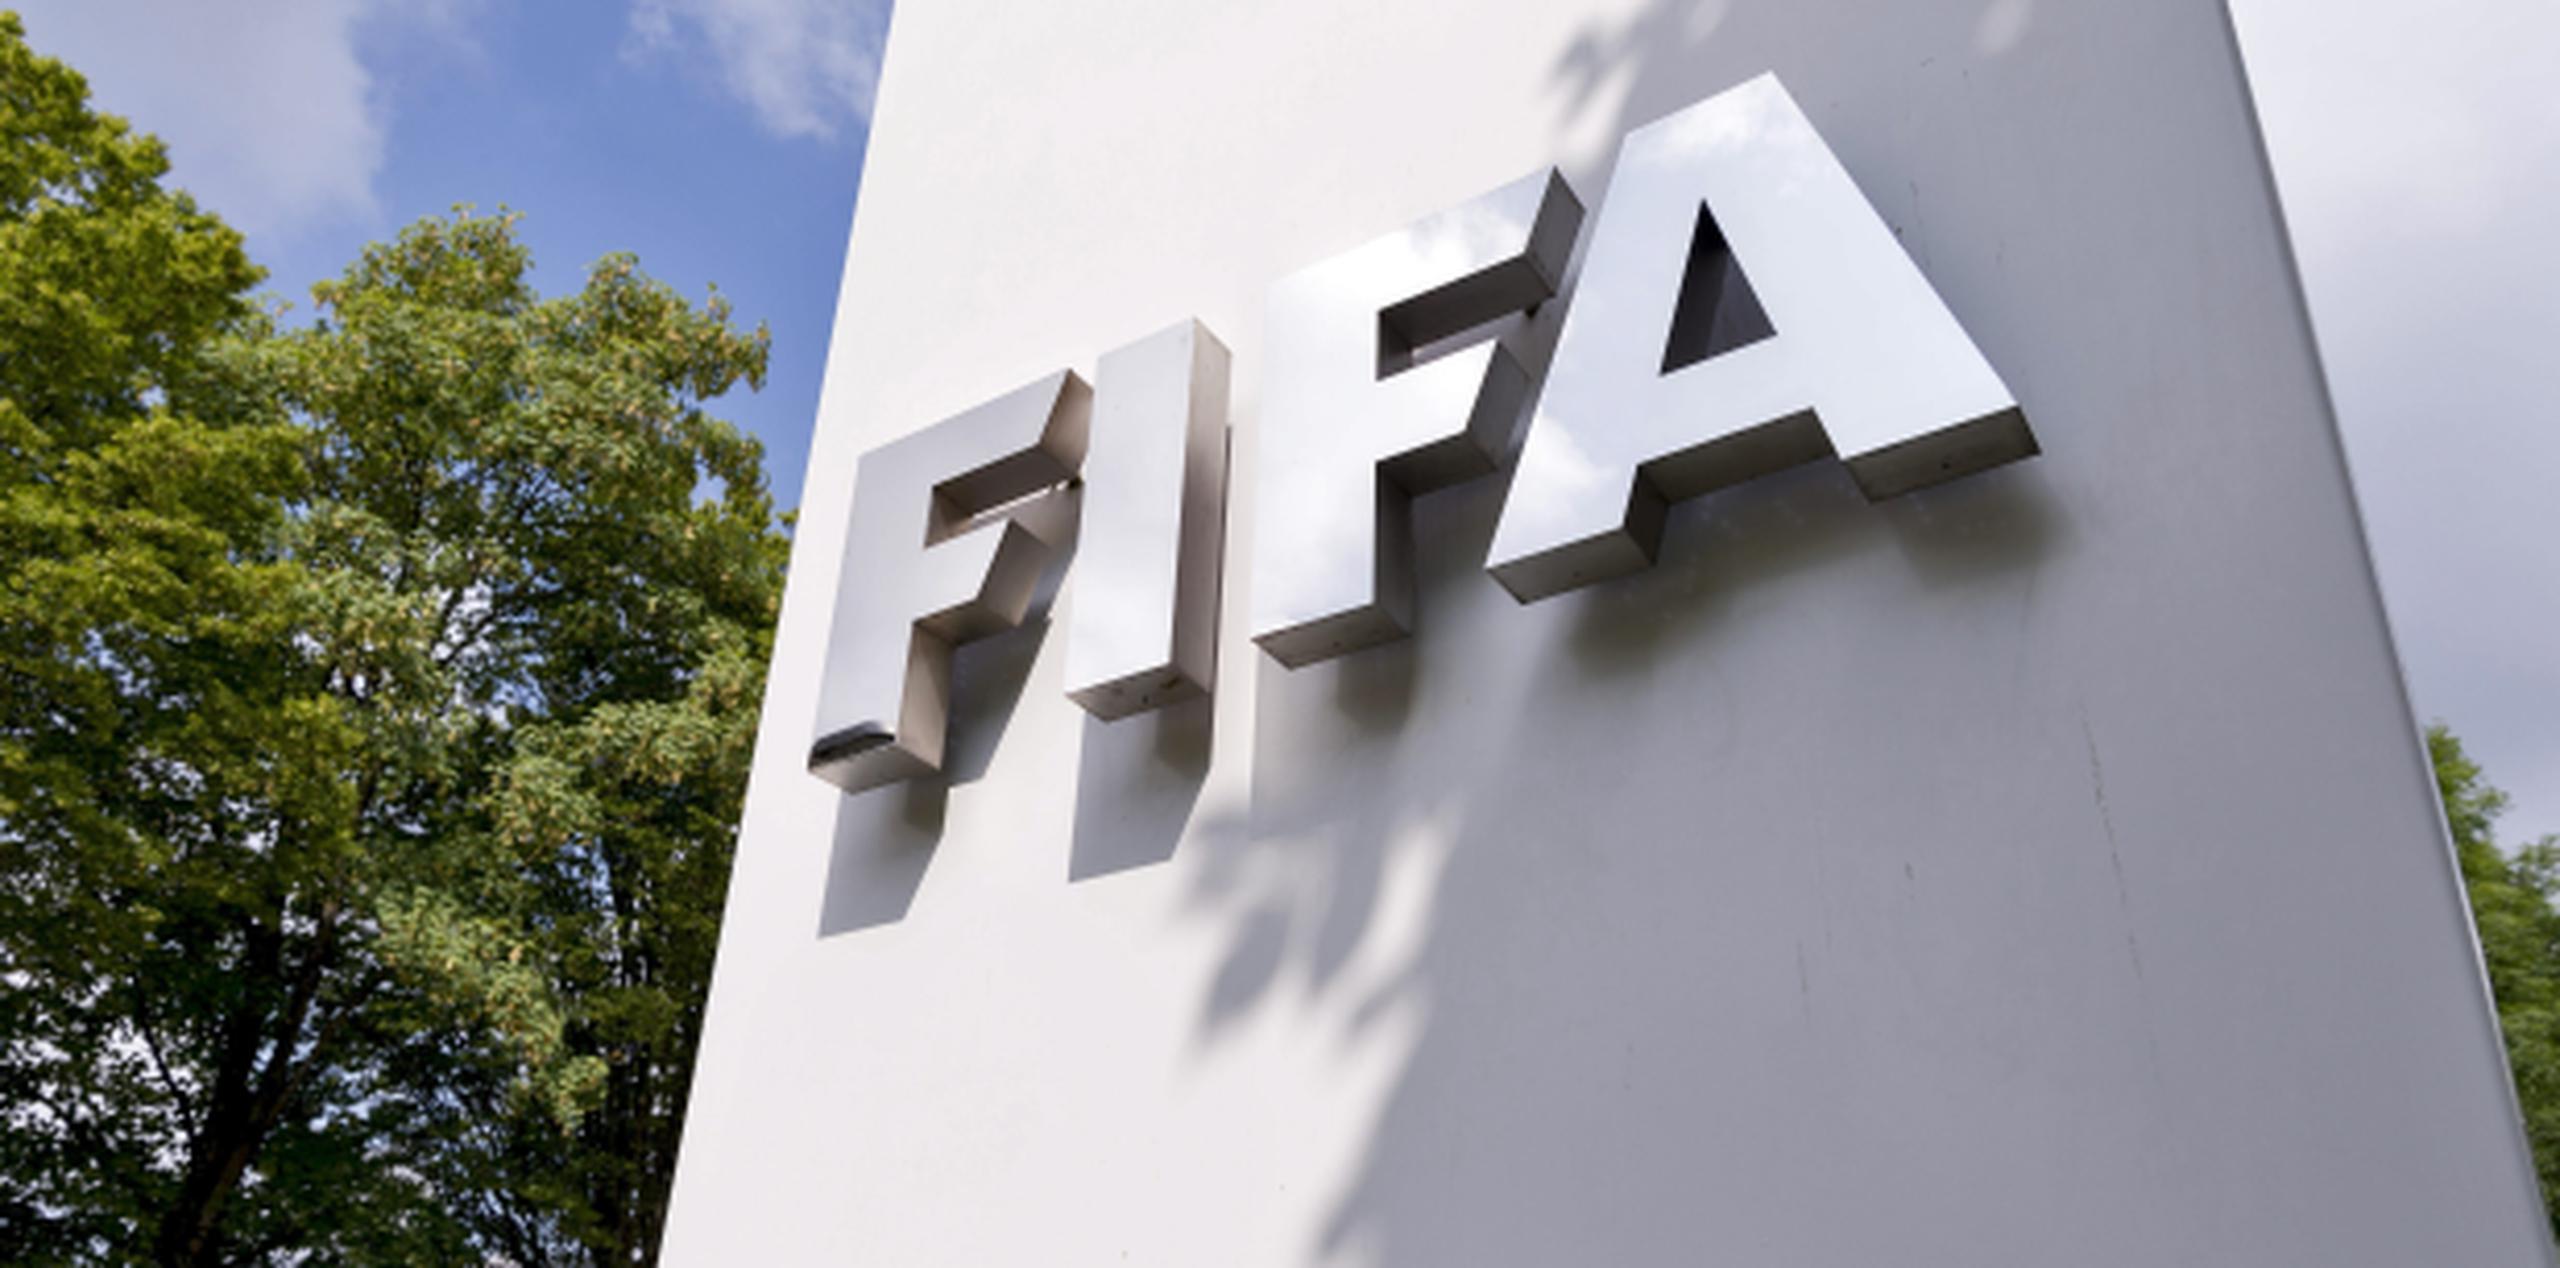 La FIFA está estudiando diversas alternativas para aumentar la cantidad de equipos participantes en el Mundial. (Archivo)